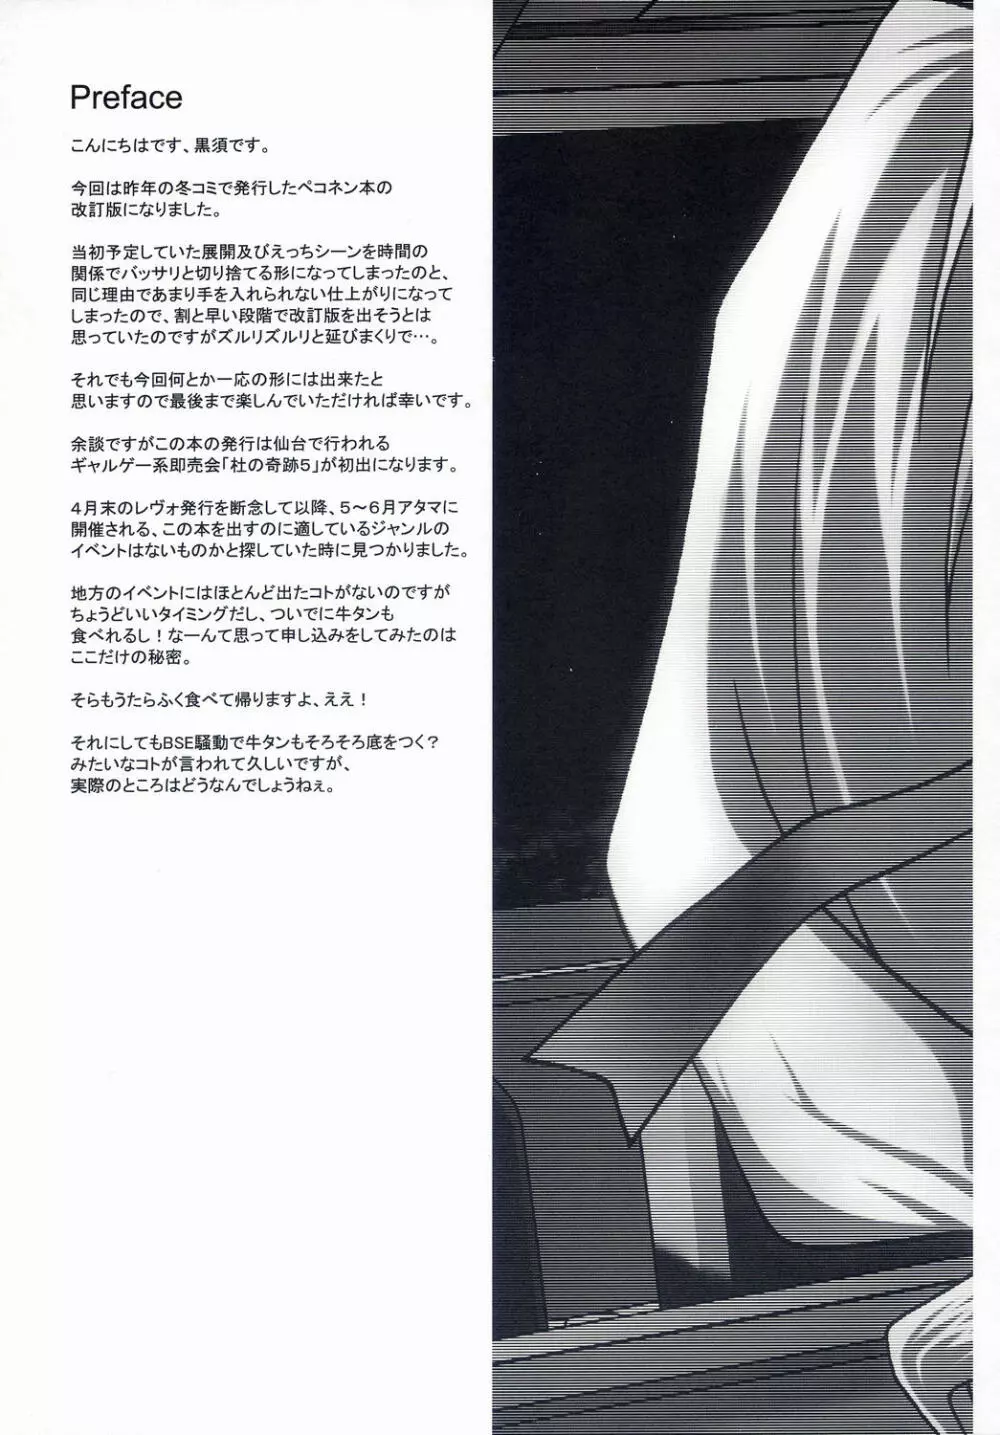 はんどめいど revised edition - page5